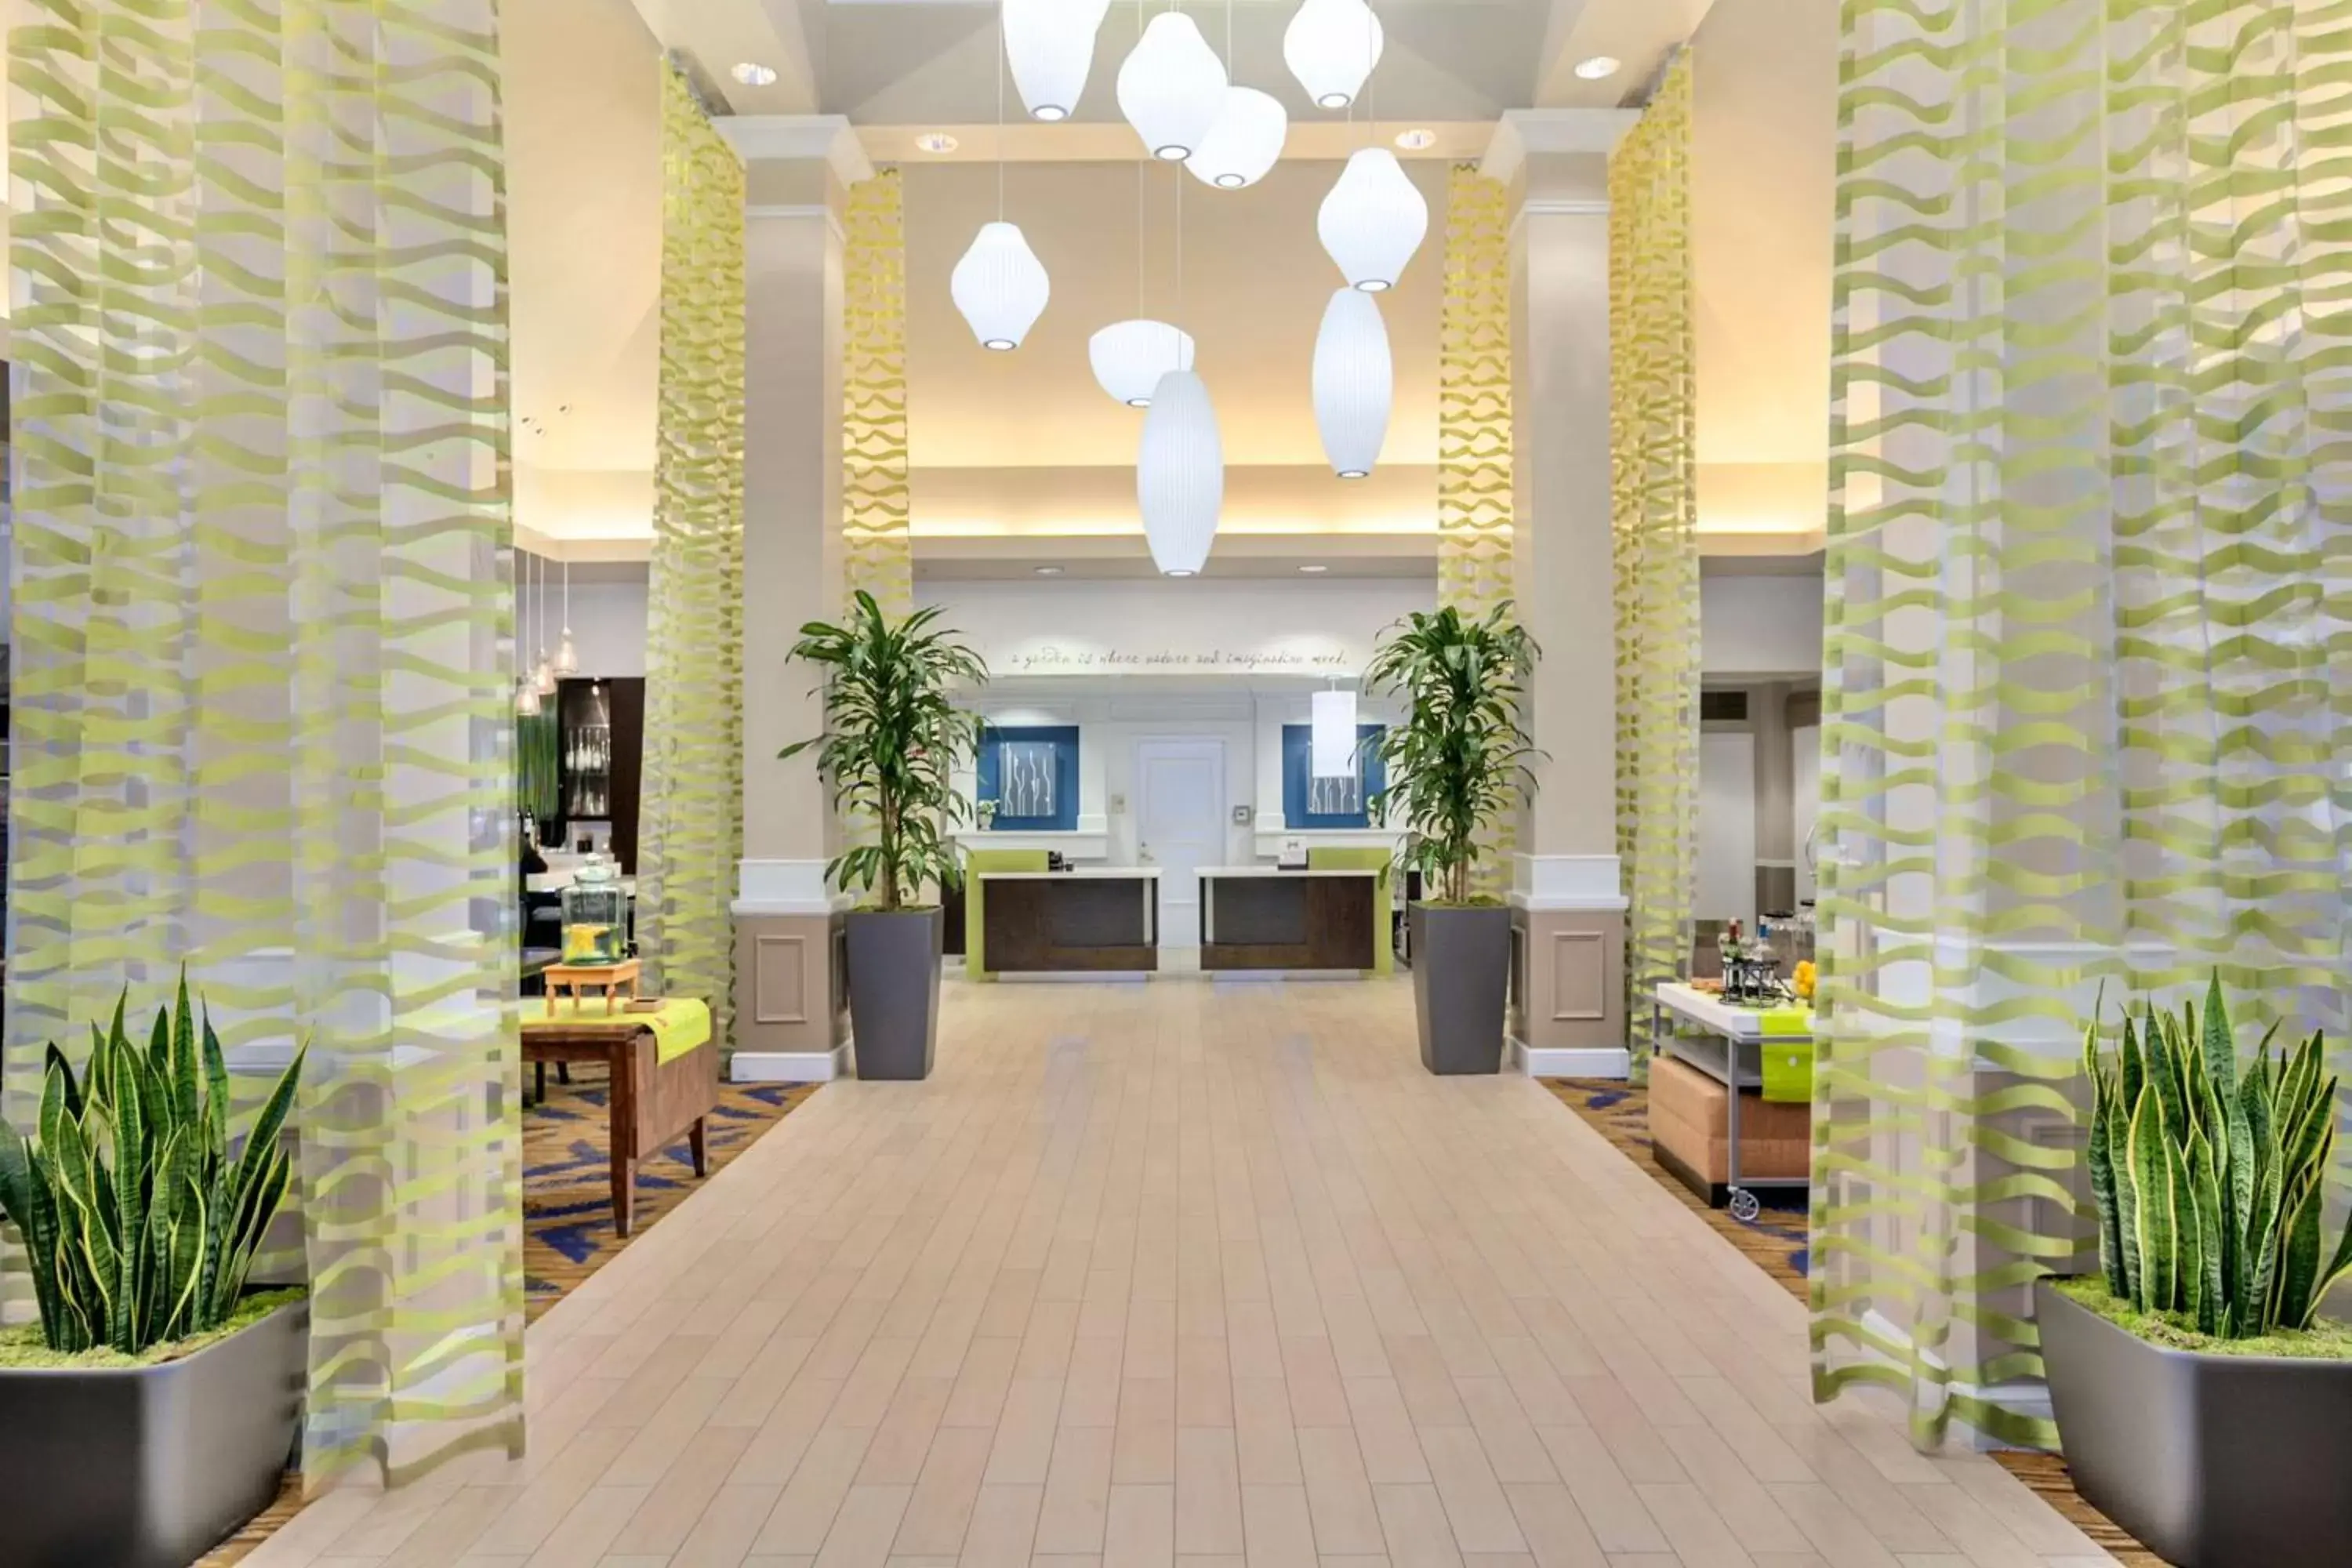 Lobby or reception, Lobby/Reception in Hilton Garden Inn Anaheim/Garden Grove